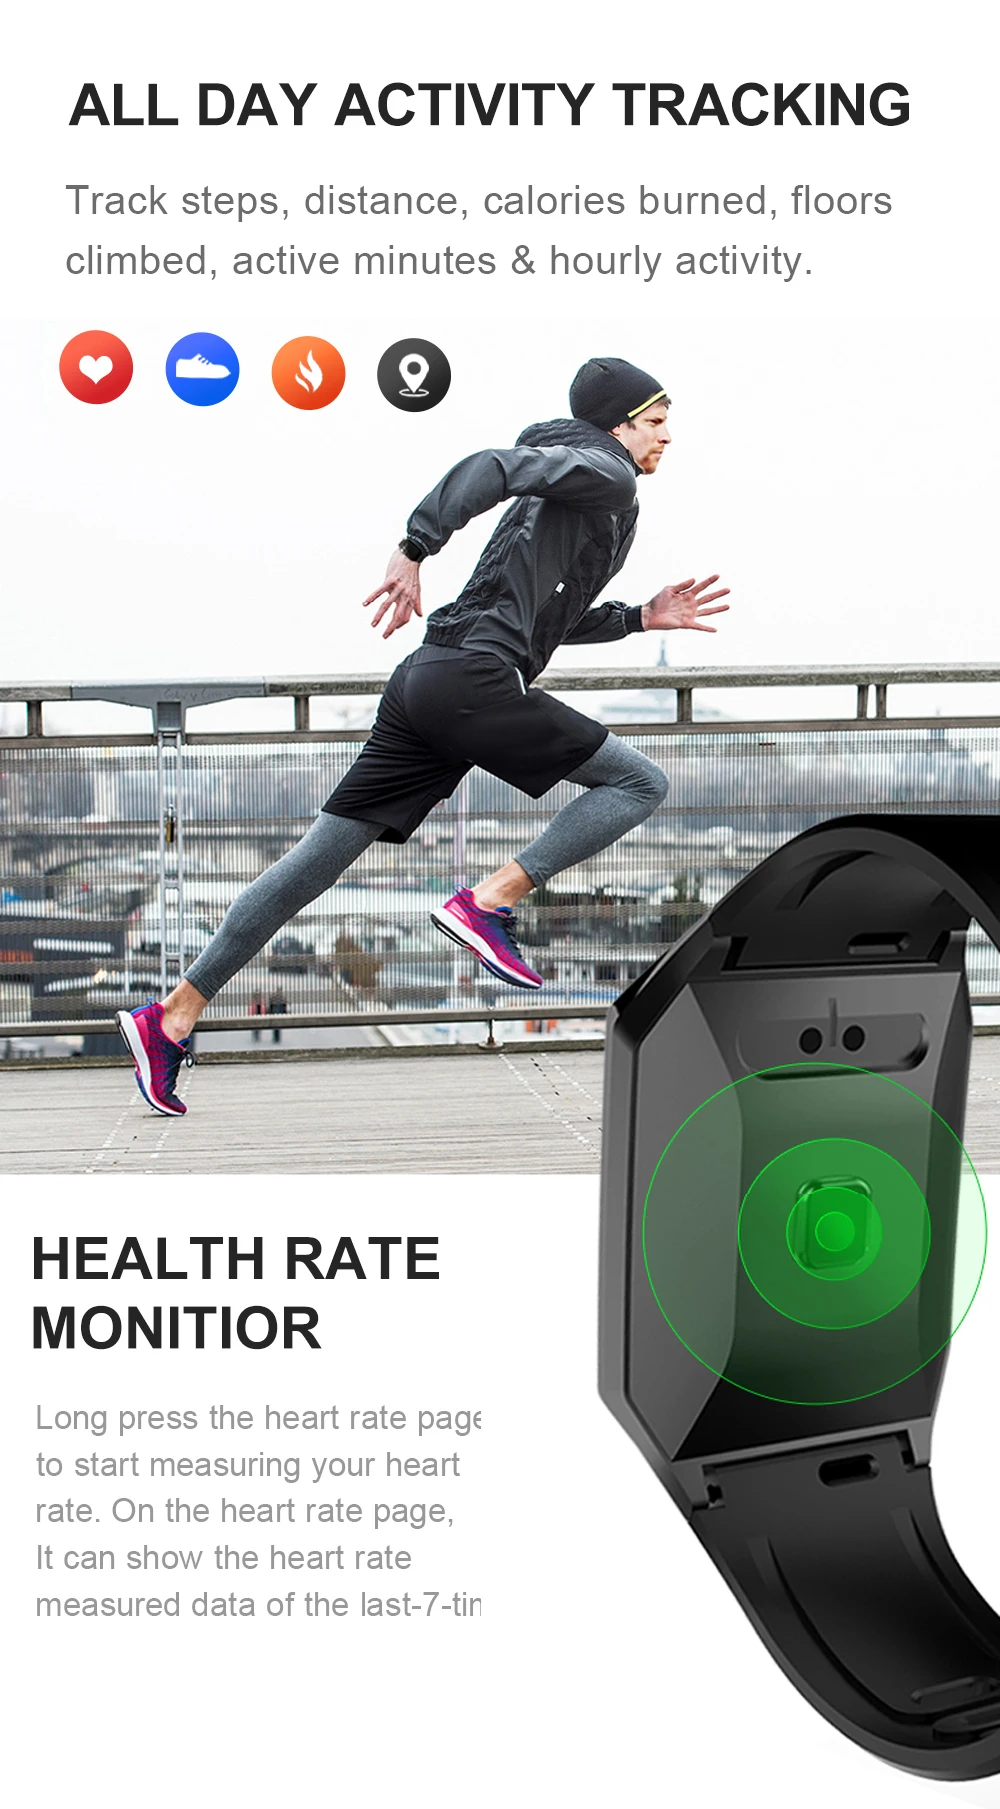 Longet W1C Смарт-часы для мужчин и женщин кислорода в крови водонепроницаемый трекер физической активности Монитор Сердечного Ритма Смарт-часы спортивные для Android IOS